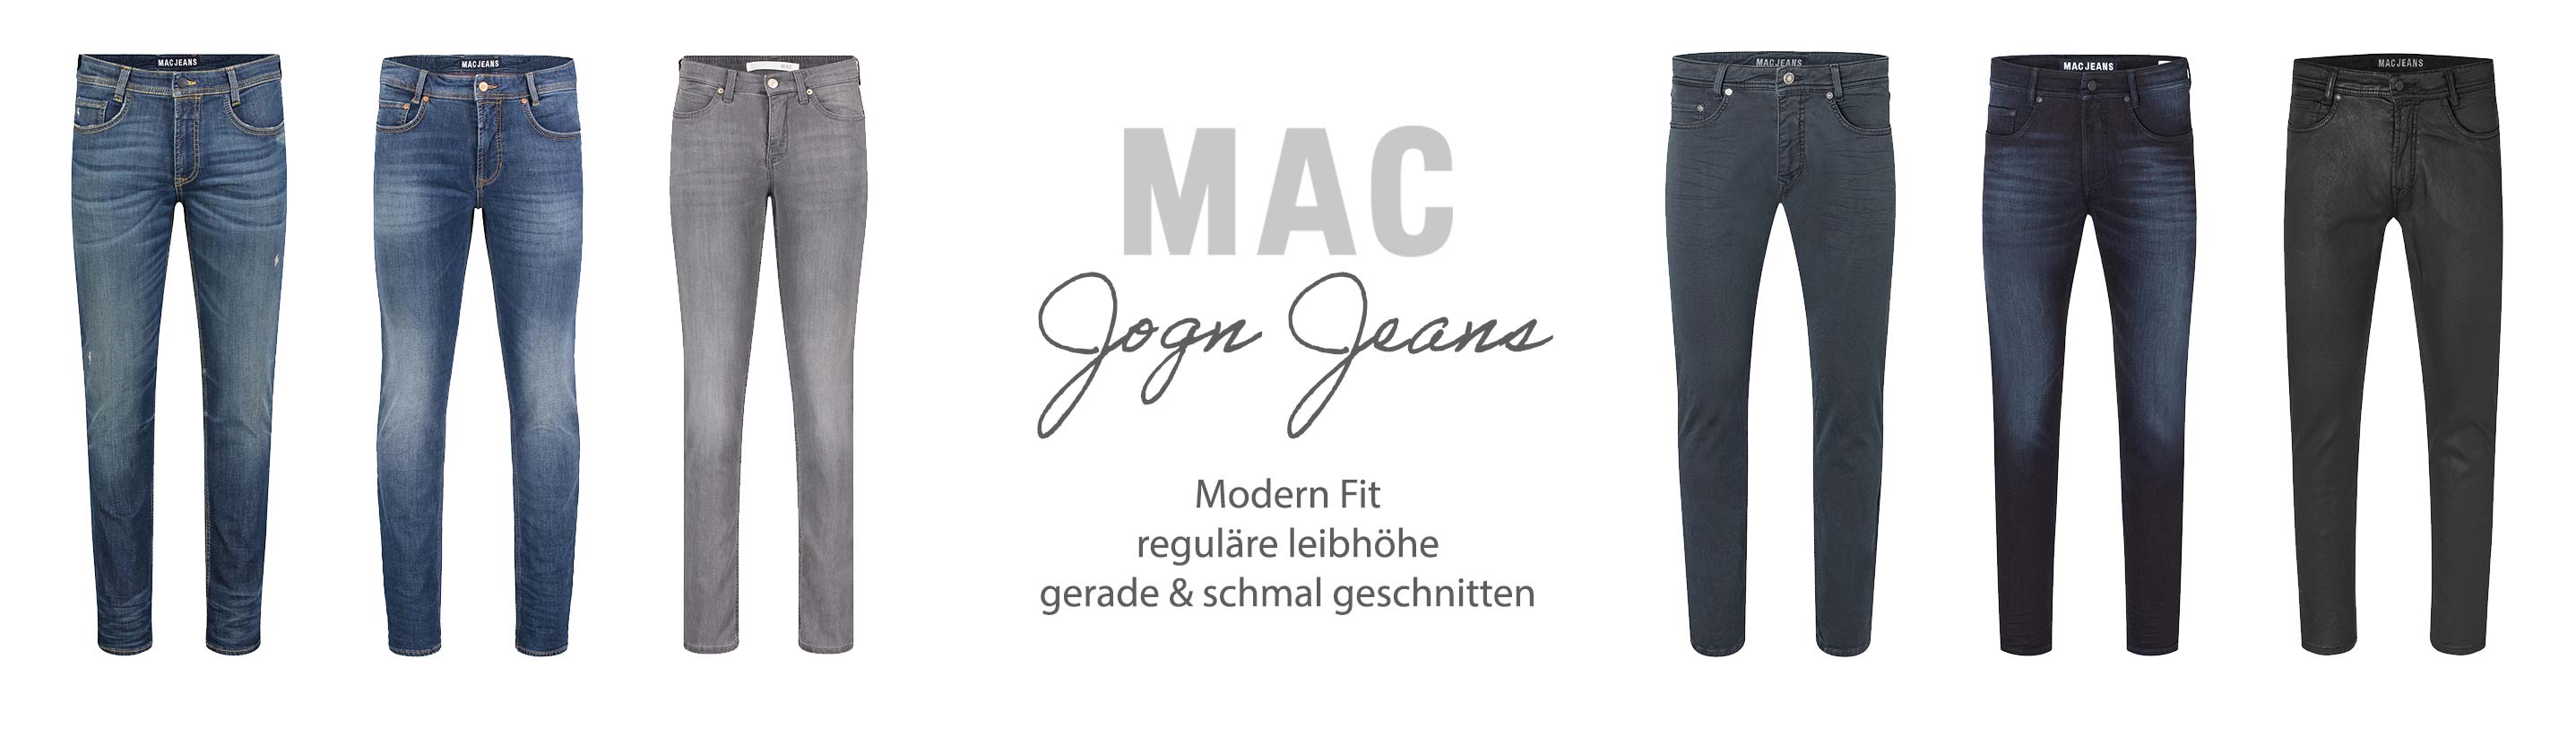 MAC Jeans Jogn